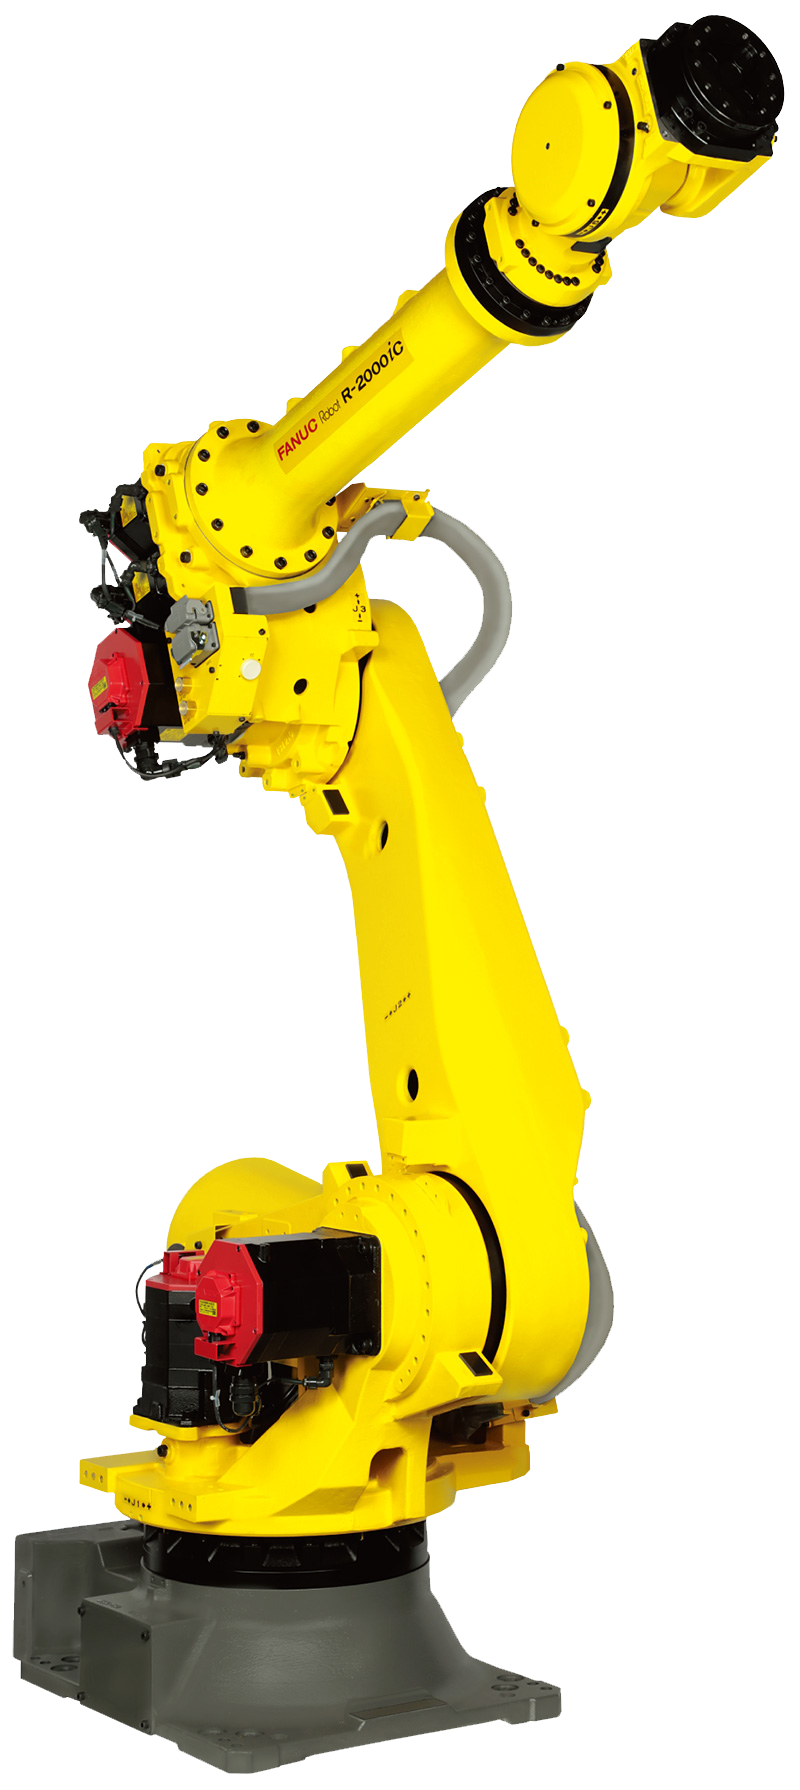 brazo robótico Fanuc r2000ic